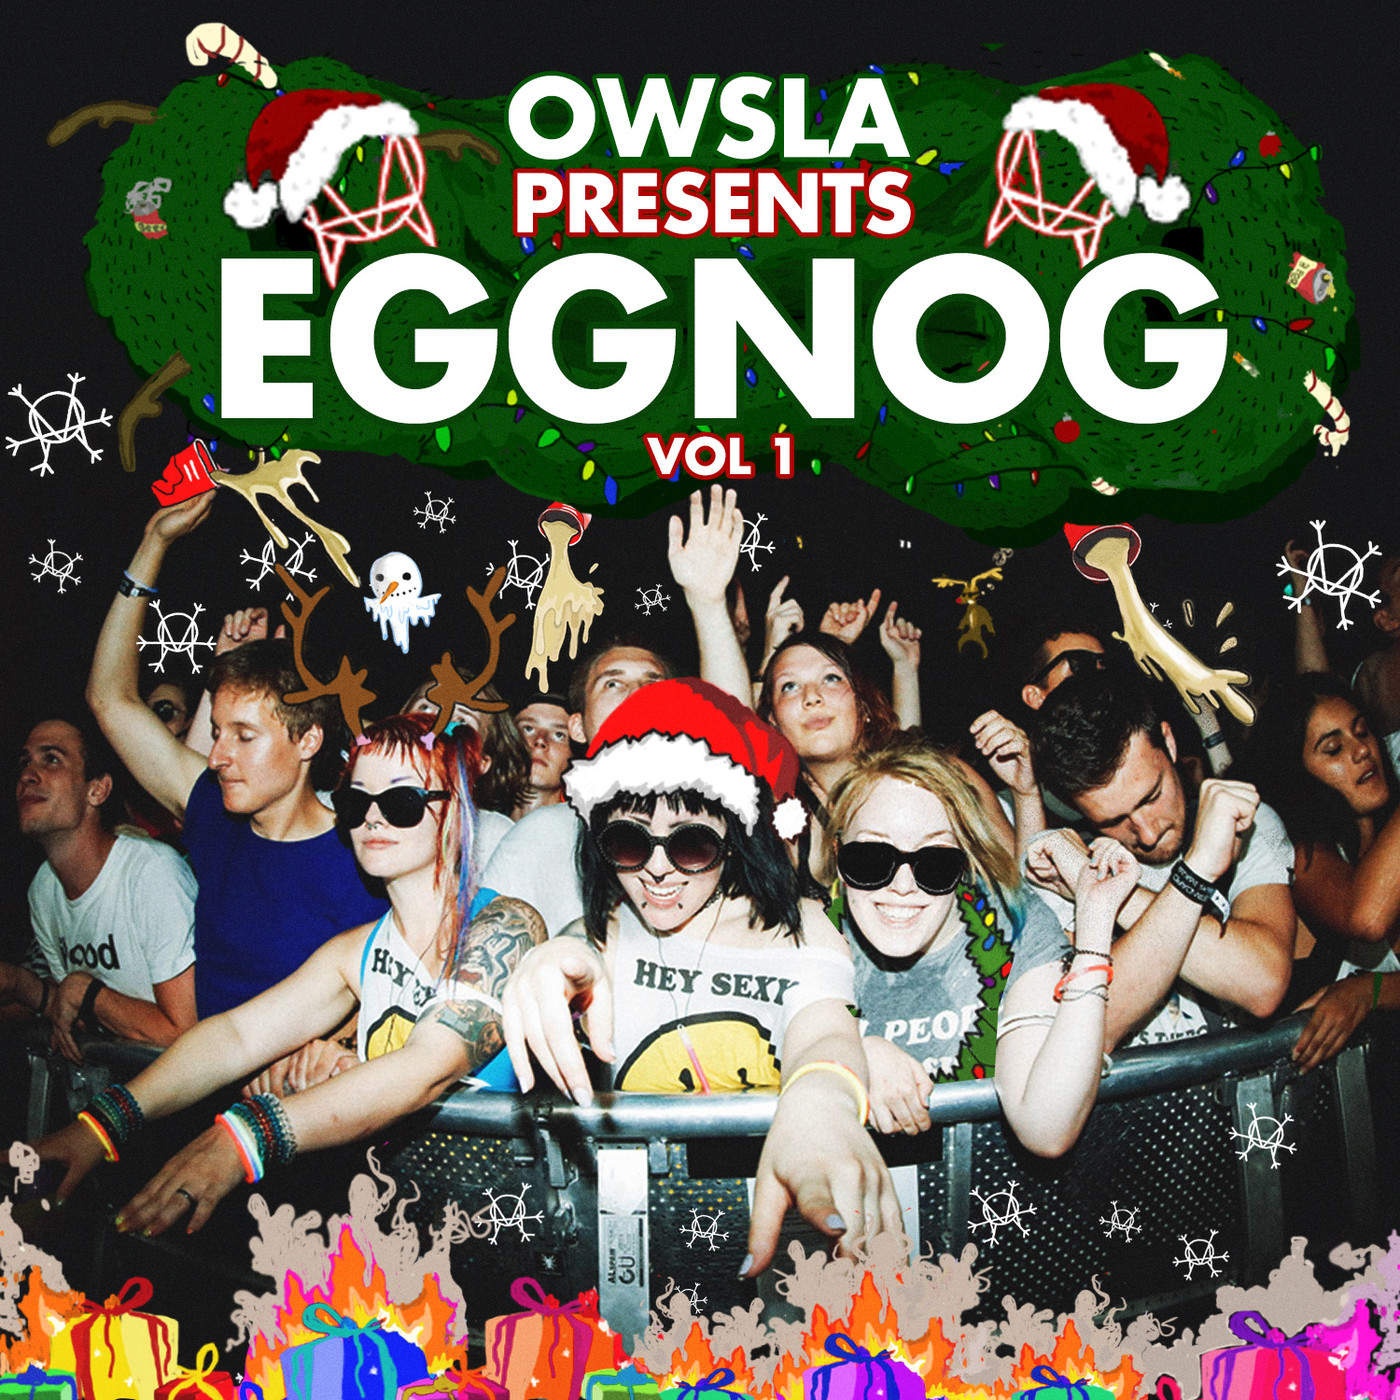 OWSLA Presents Eggnogg, Vol. 1